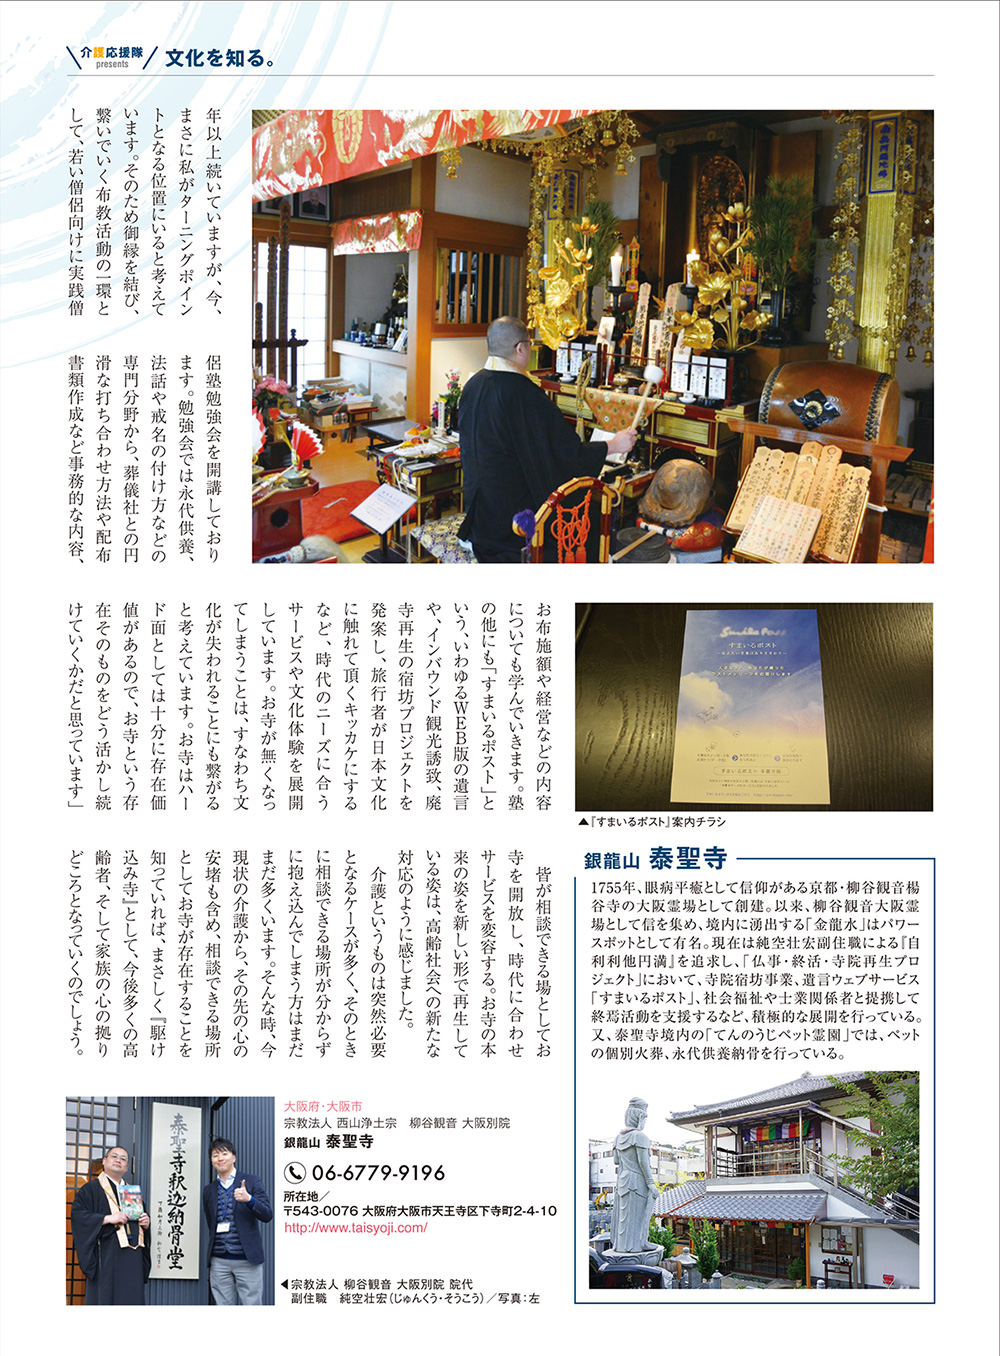 日本介護協会が発行する『介護応援隊』に泰聖寺の記事が掲載されています。2